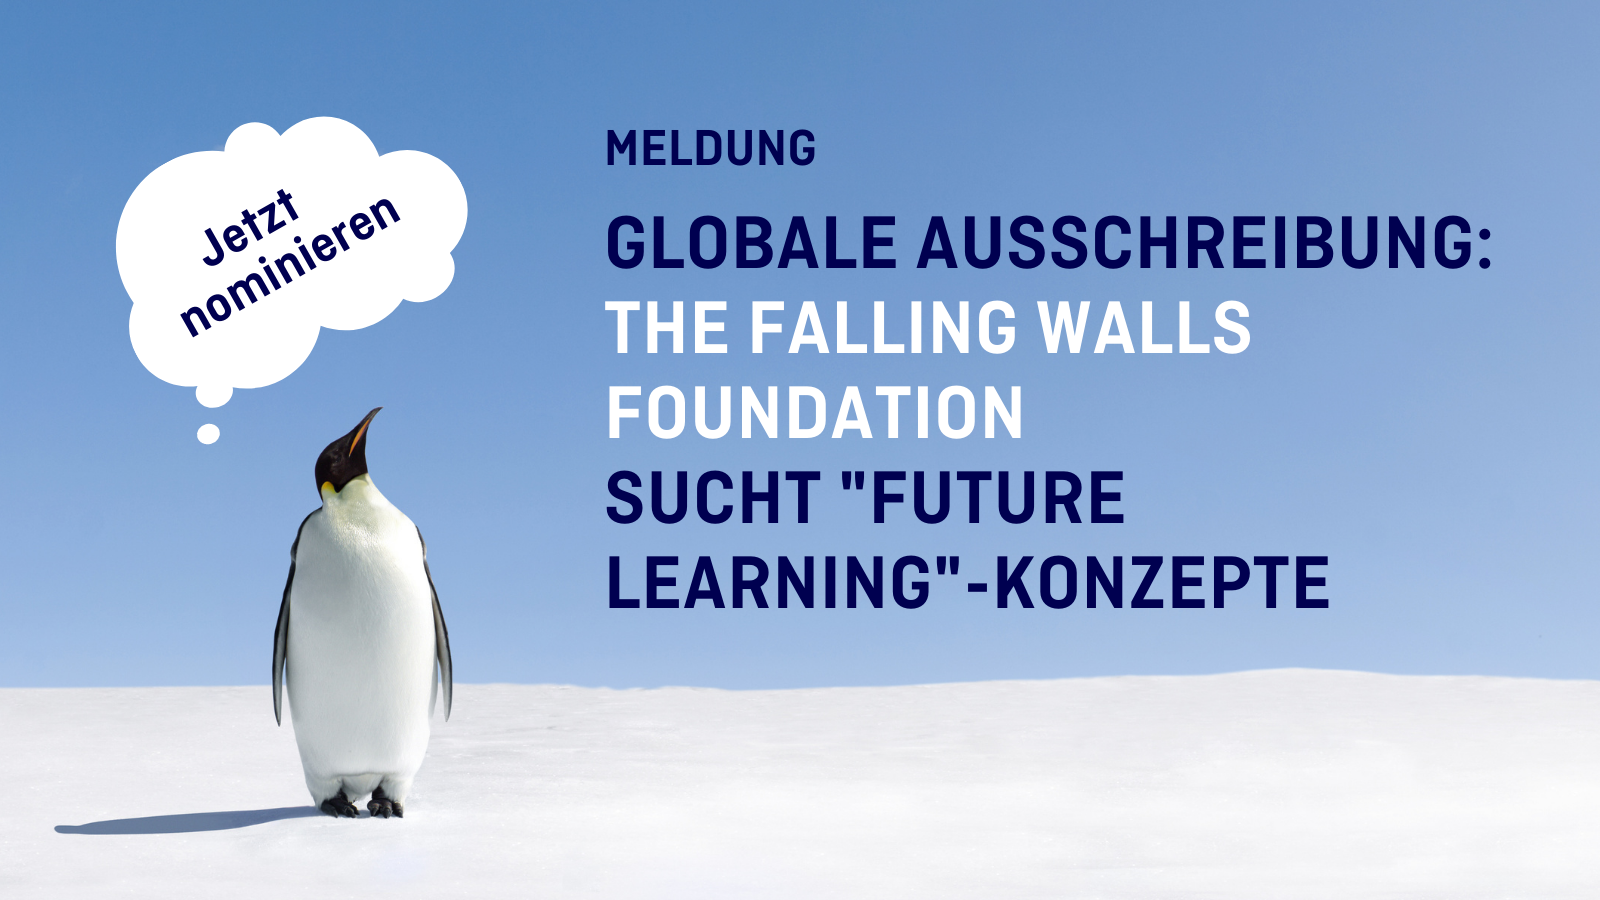 Titelbild zur Meldung: Globale Ausschreibung von The Falling Walls Foundation - Konzepte für "Future Learning" gesucht. Jetzt nominieren.